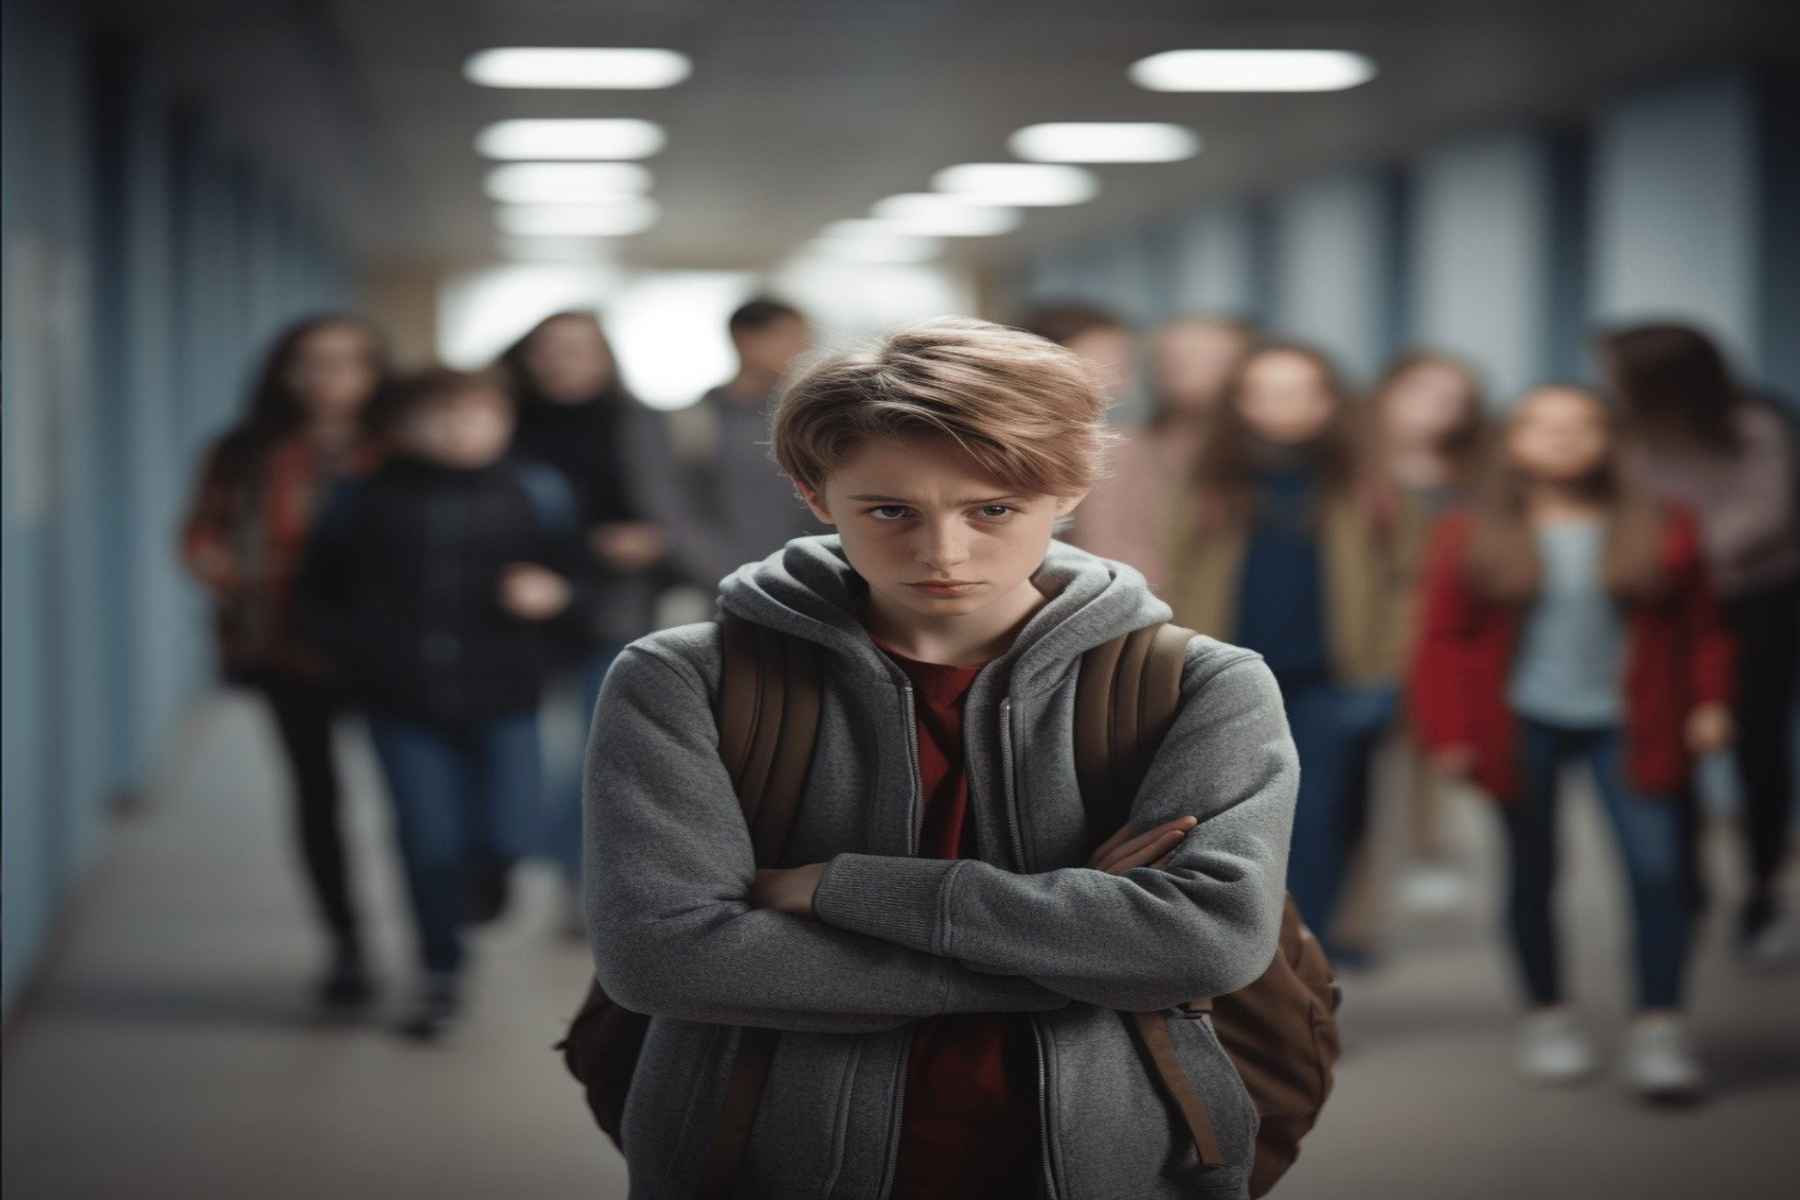 Βullying παιδιά: Ποια είναι η καλύτερη απάντηση στη σχολική βία;